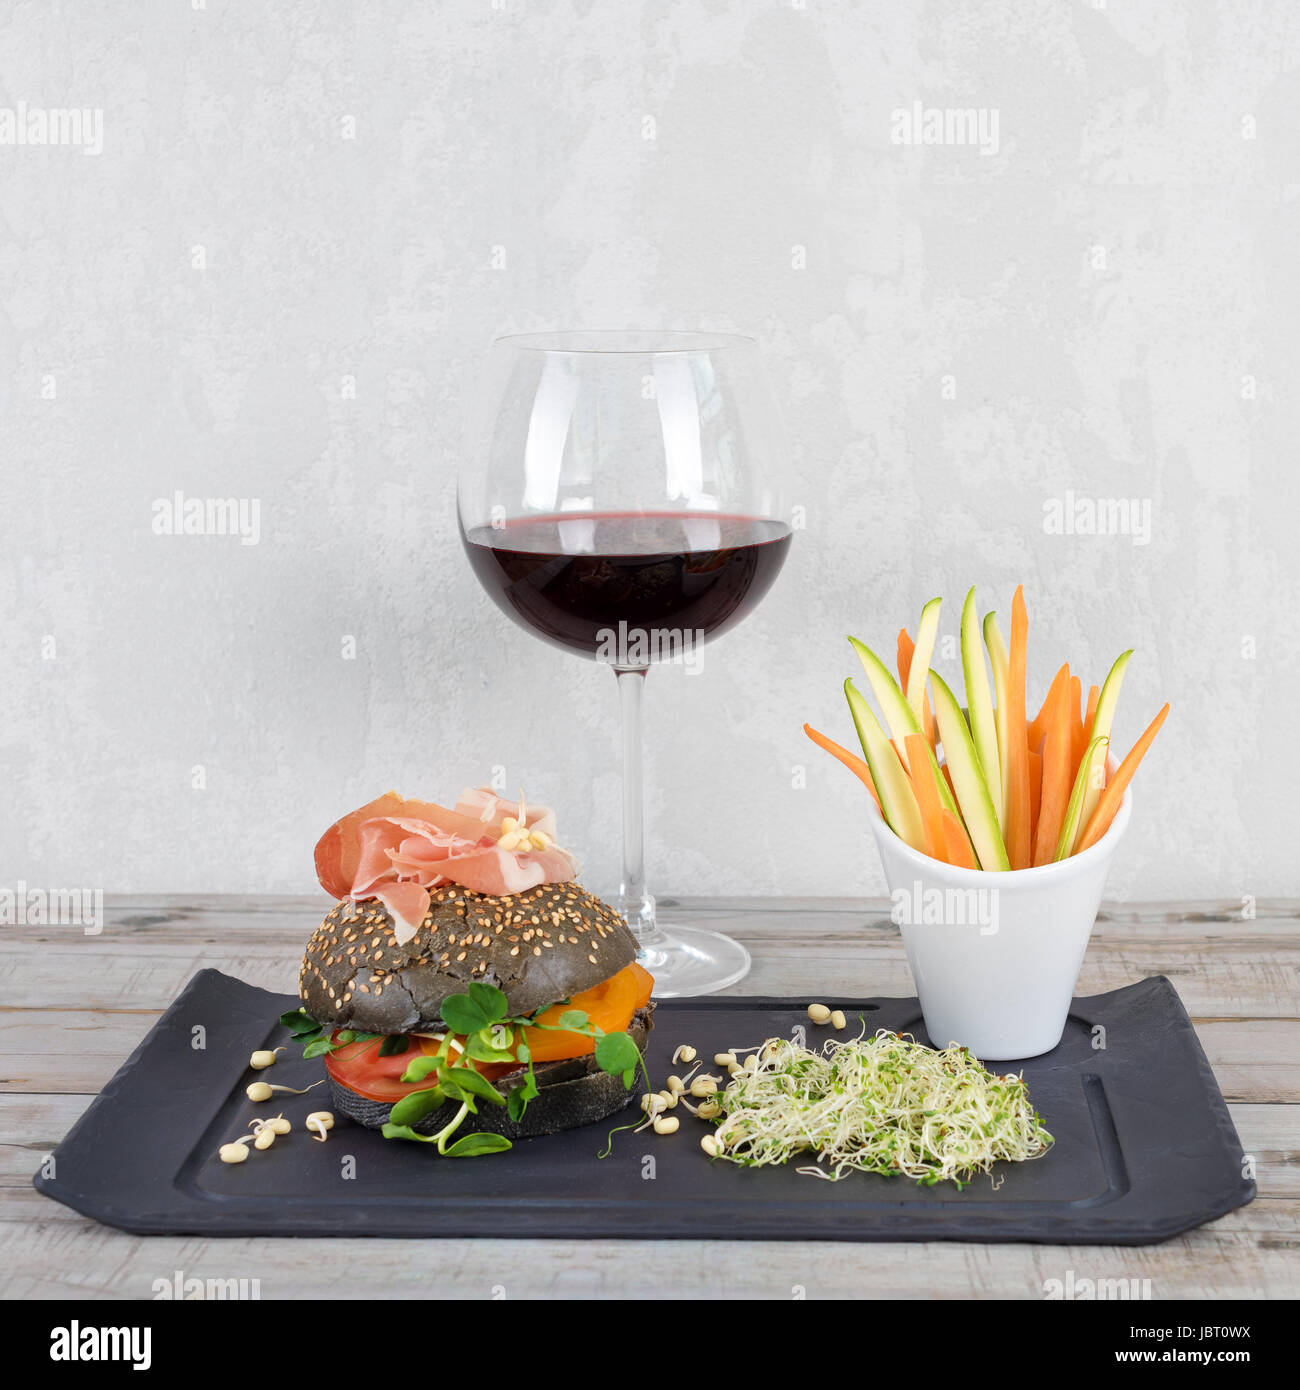 Gesunde Burger mit Hamon, Tomaten, Mikro grünen und schwarzen Vollkorn Brötchen, Gemüsesticks und Rotwein auf Schiefer Tafel über hölzerne Hintergrund. Sauber Essen, Diäten, detox Food-Konzept. Stockfoto